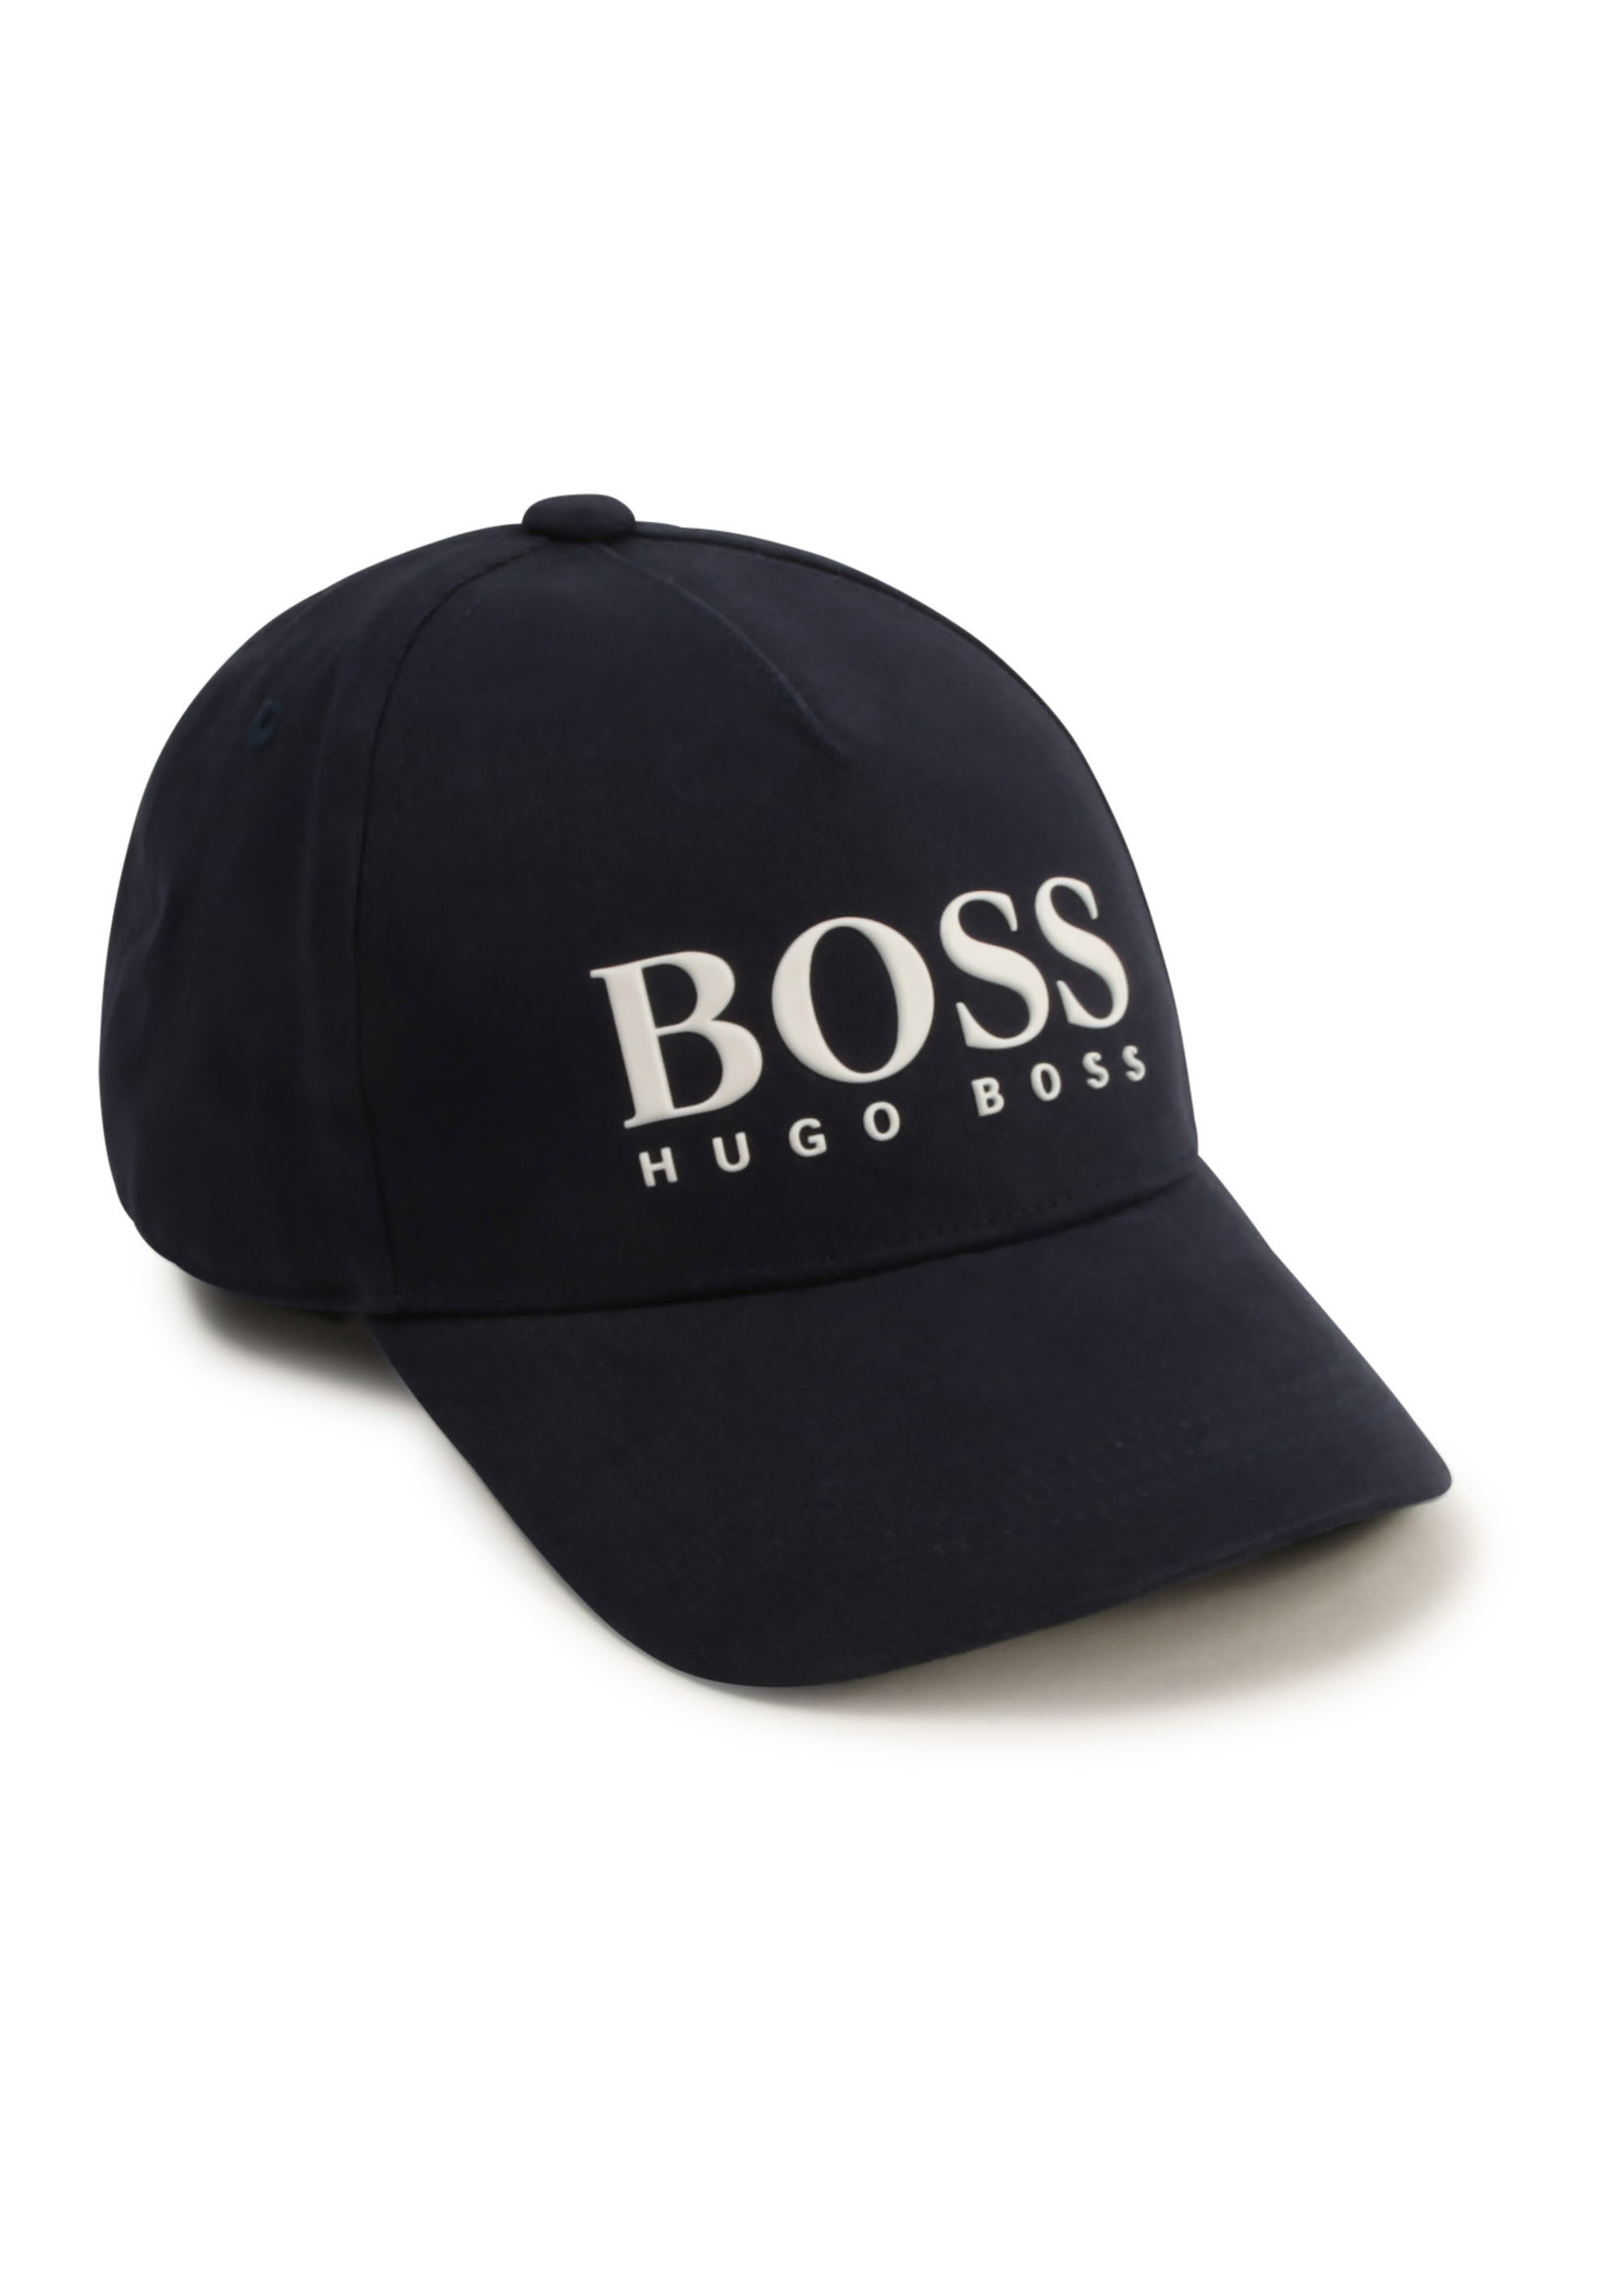 BOSS BOSS Boy cap navy blue - J21252